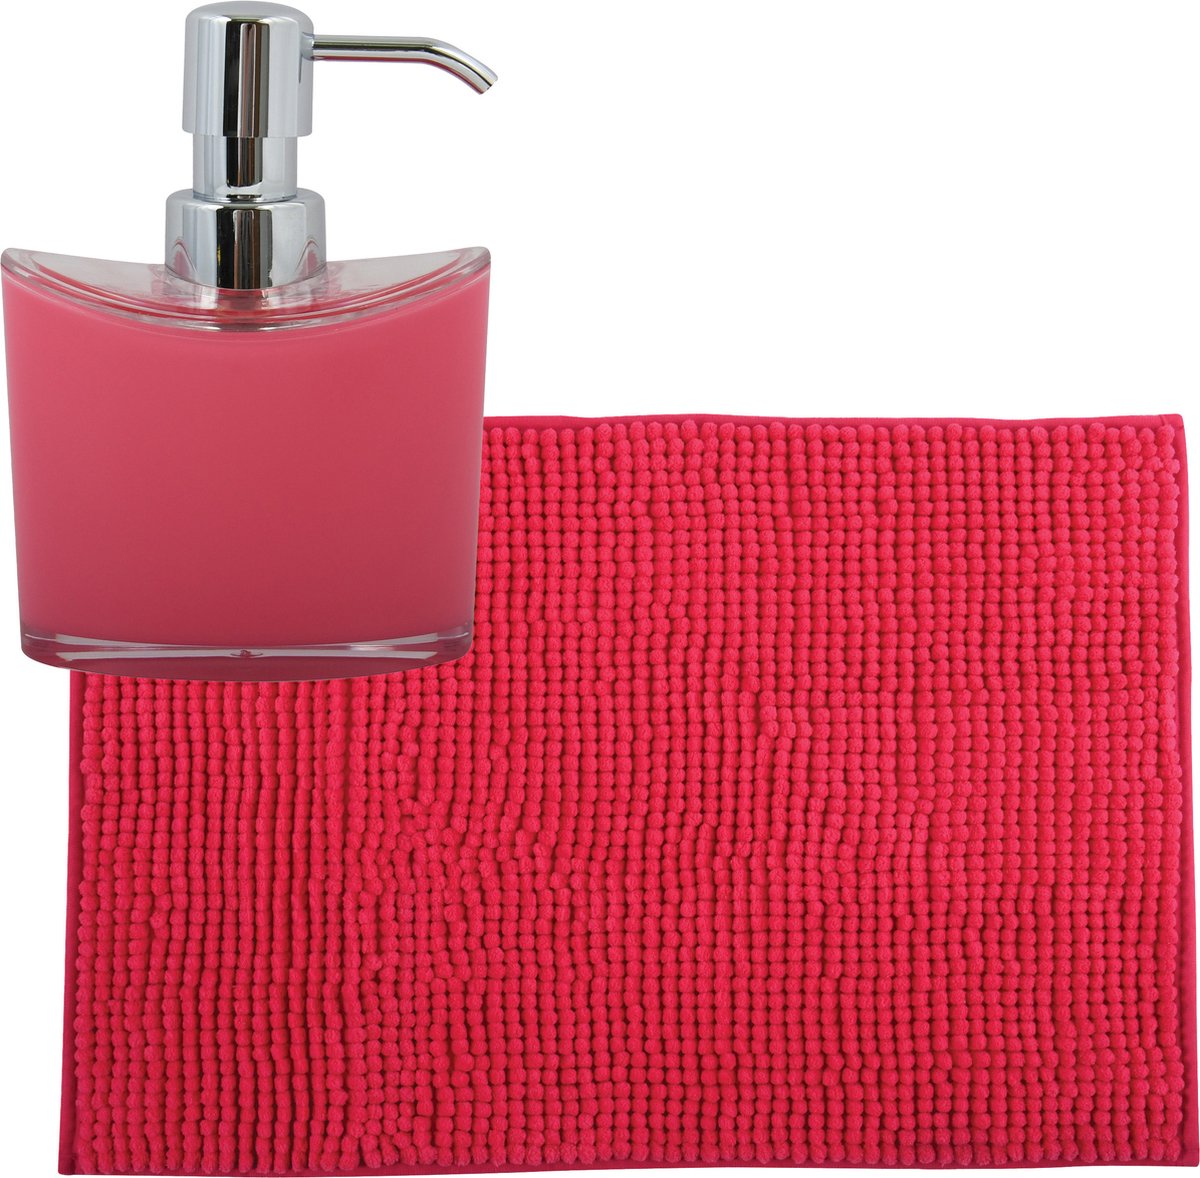 MSV badkamer droogloop mat tapijtje 40 x 60 cm en zelfde kleur zeeppompje 260 ml fuchsia roze